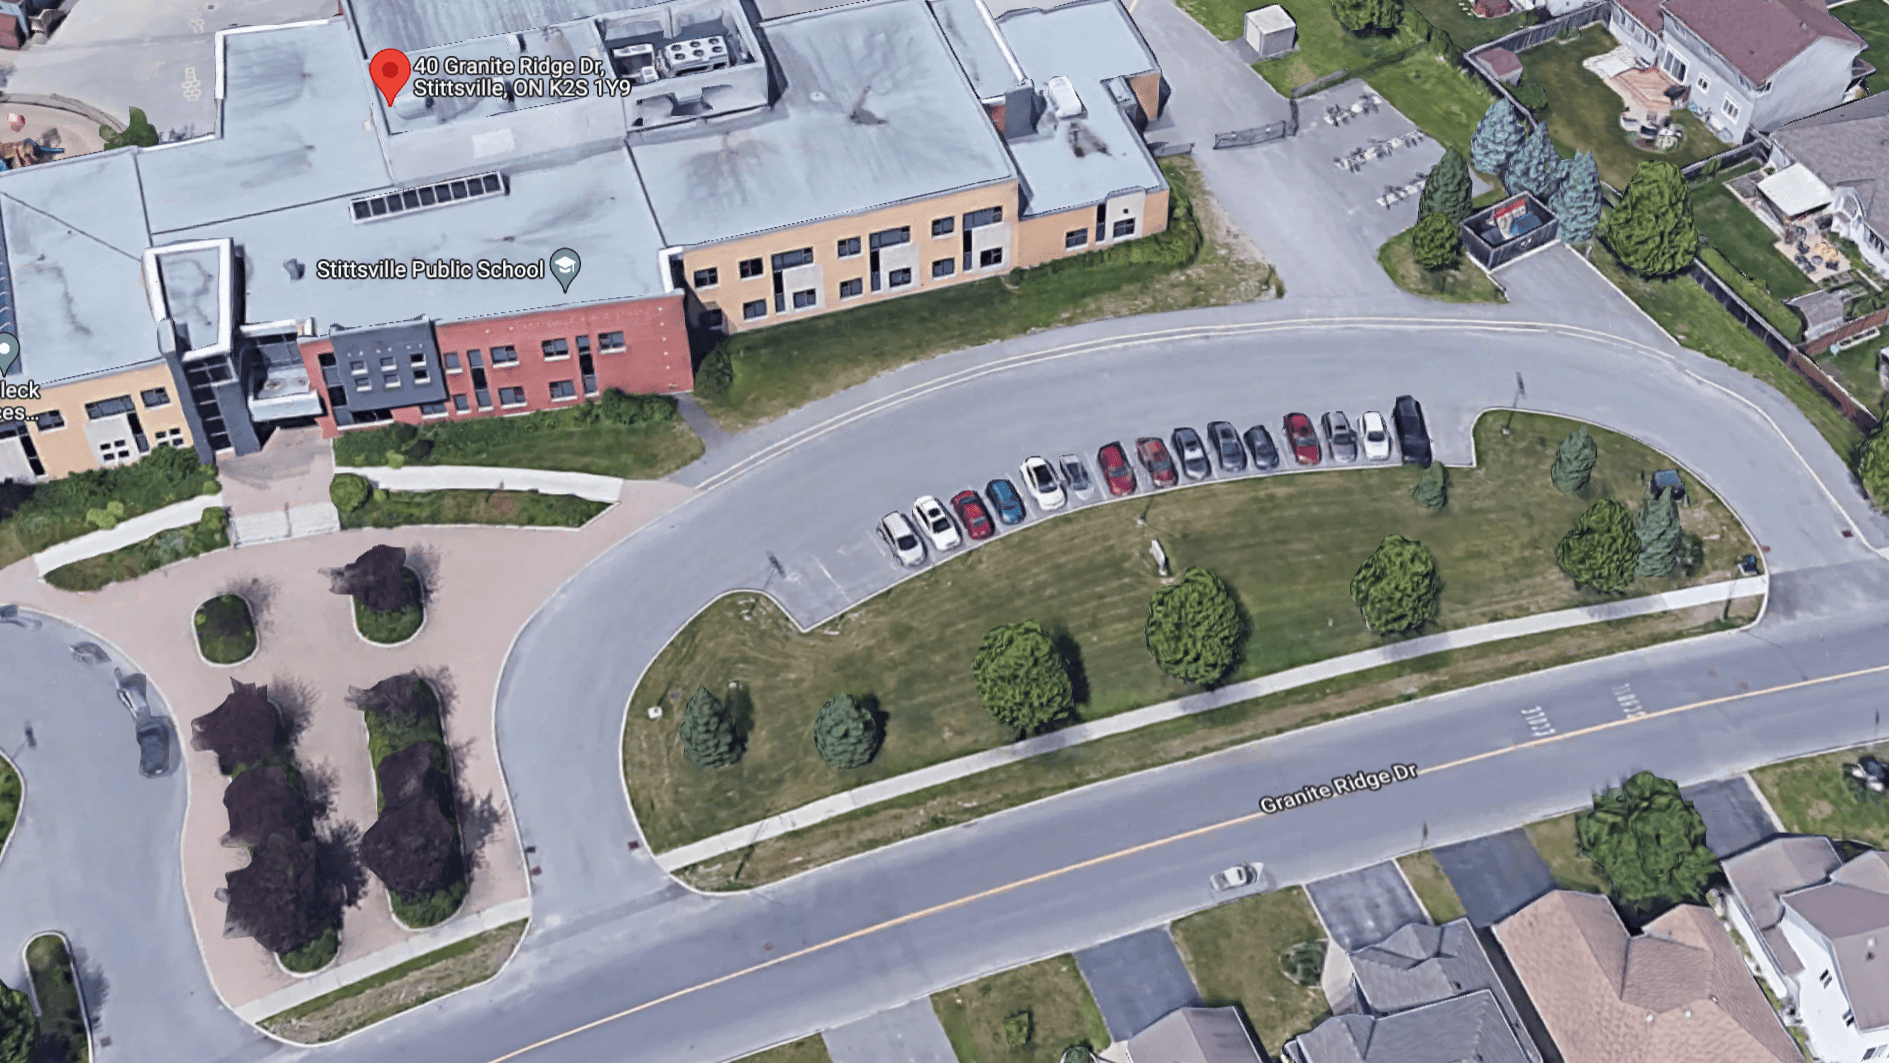 上品アウトドア40 Granite Ridge: Site Plan Control (Stittsville Public School